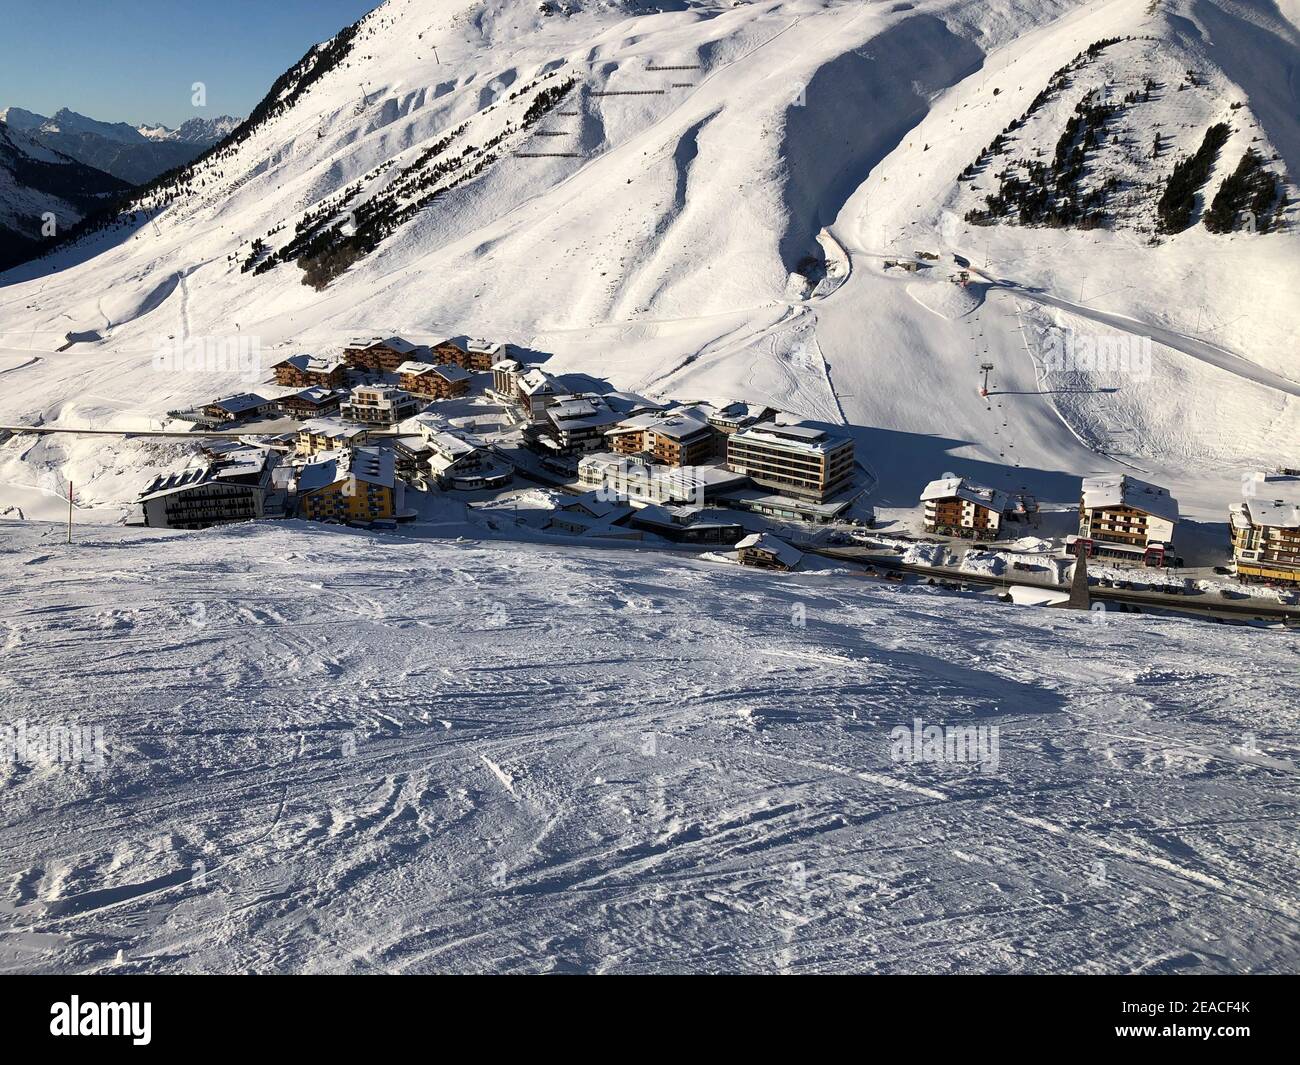 Vue sur la place Kühtai, le domaine skiable de Kühtai, la neige, l'hiver, Kühtai, Tyrol, Autriche Banque D'Images